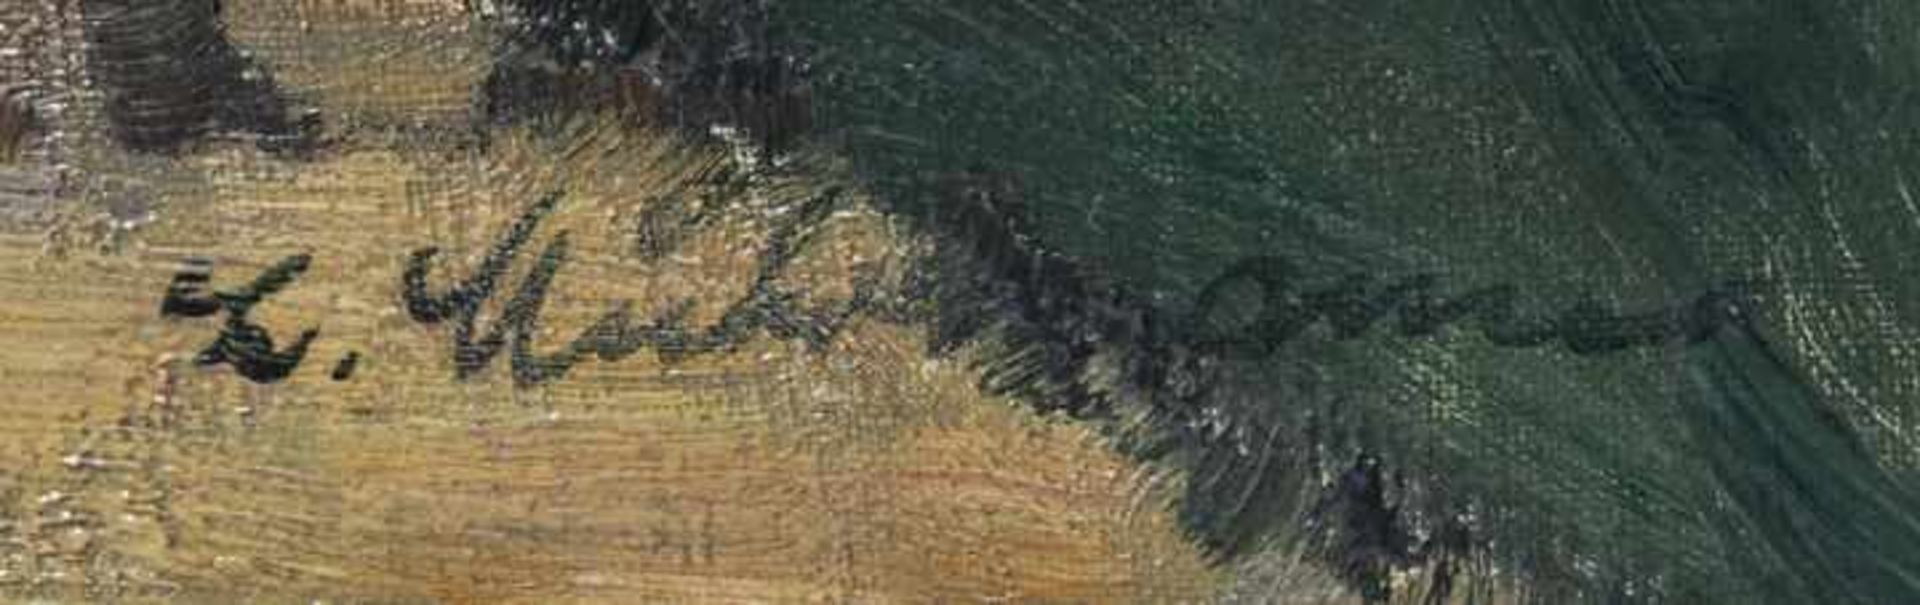 Muhrmann, LudwigStillleben mit Früchten und Tauben. Öl auf Leinwand, li. u. sign. 60,5 x 81 cm. - Bild 6 aus 8